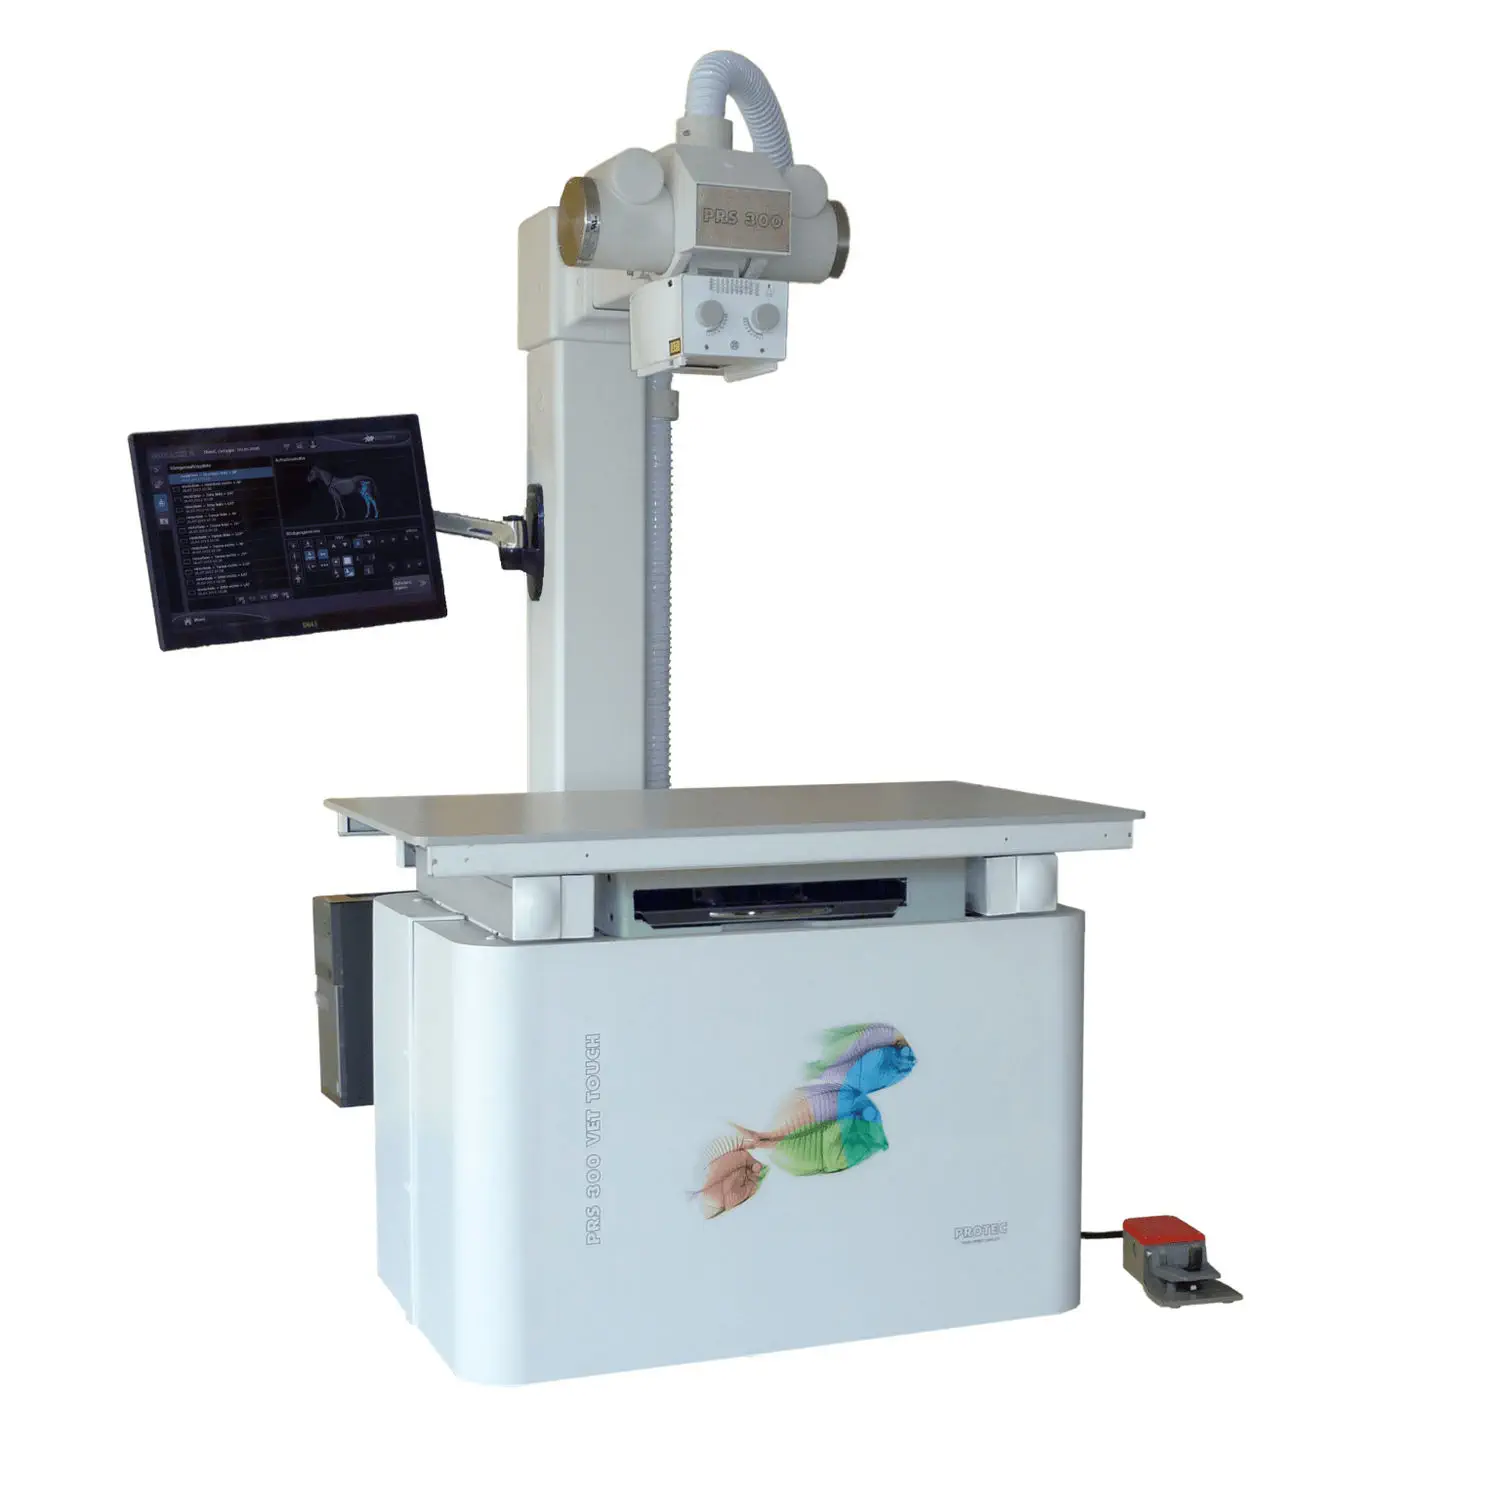 เครื่องเอกซเรย์ระบบดิจิตอลสำหรับสัตว์ Veterinary X-ray system PRS 300 VET TOUCH  PROTEC